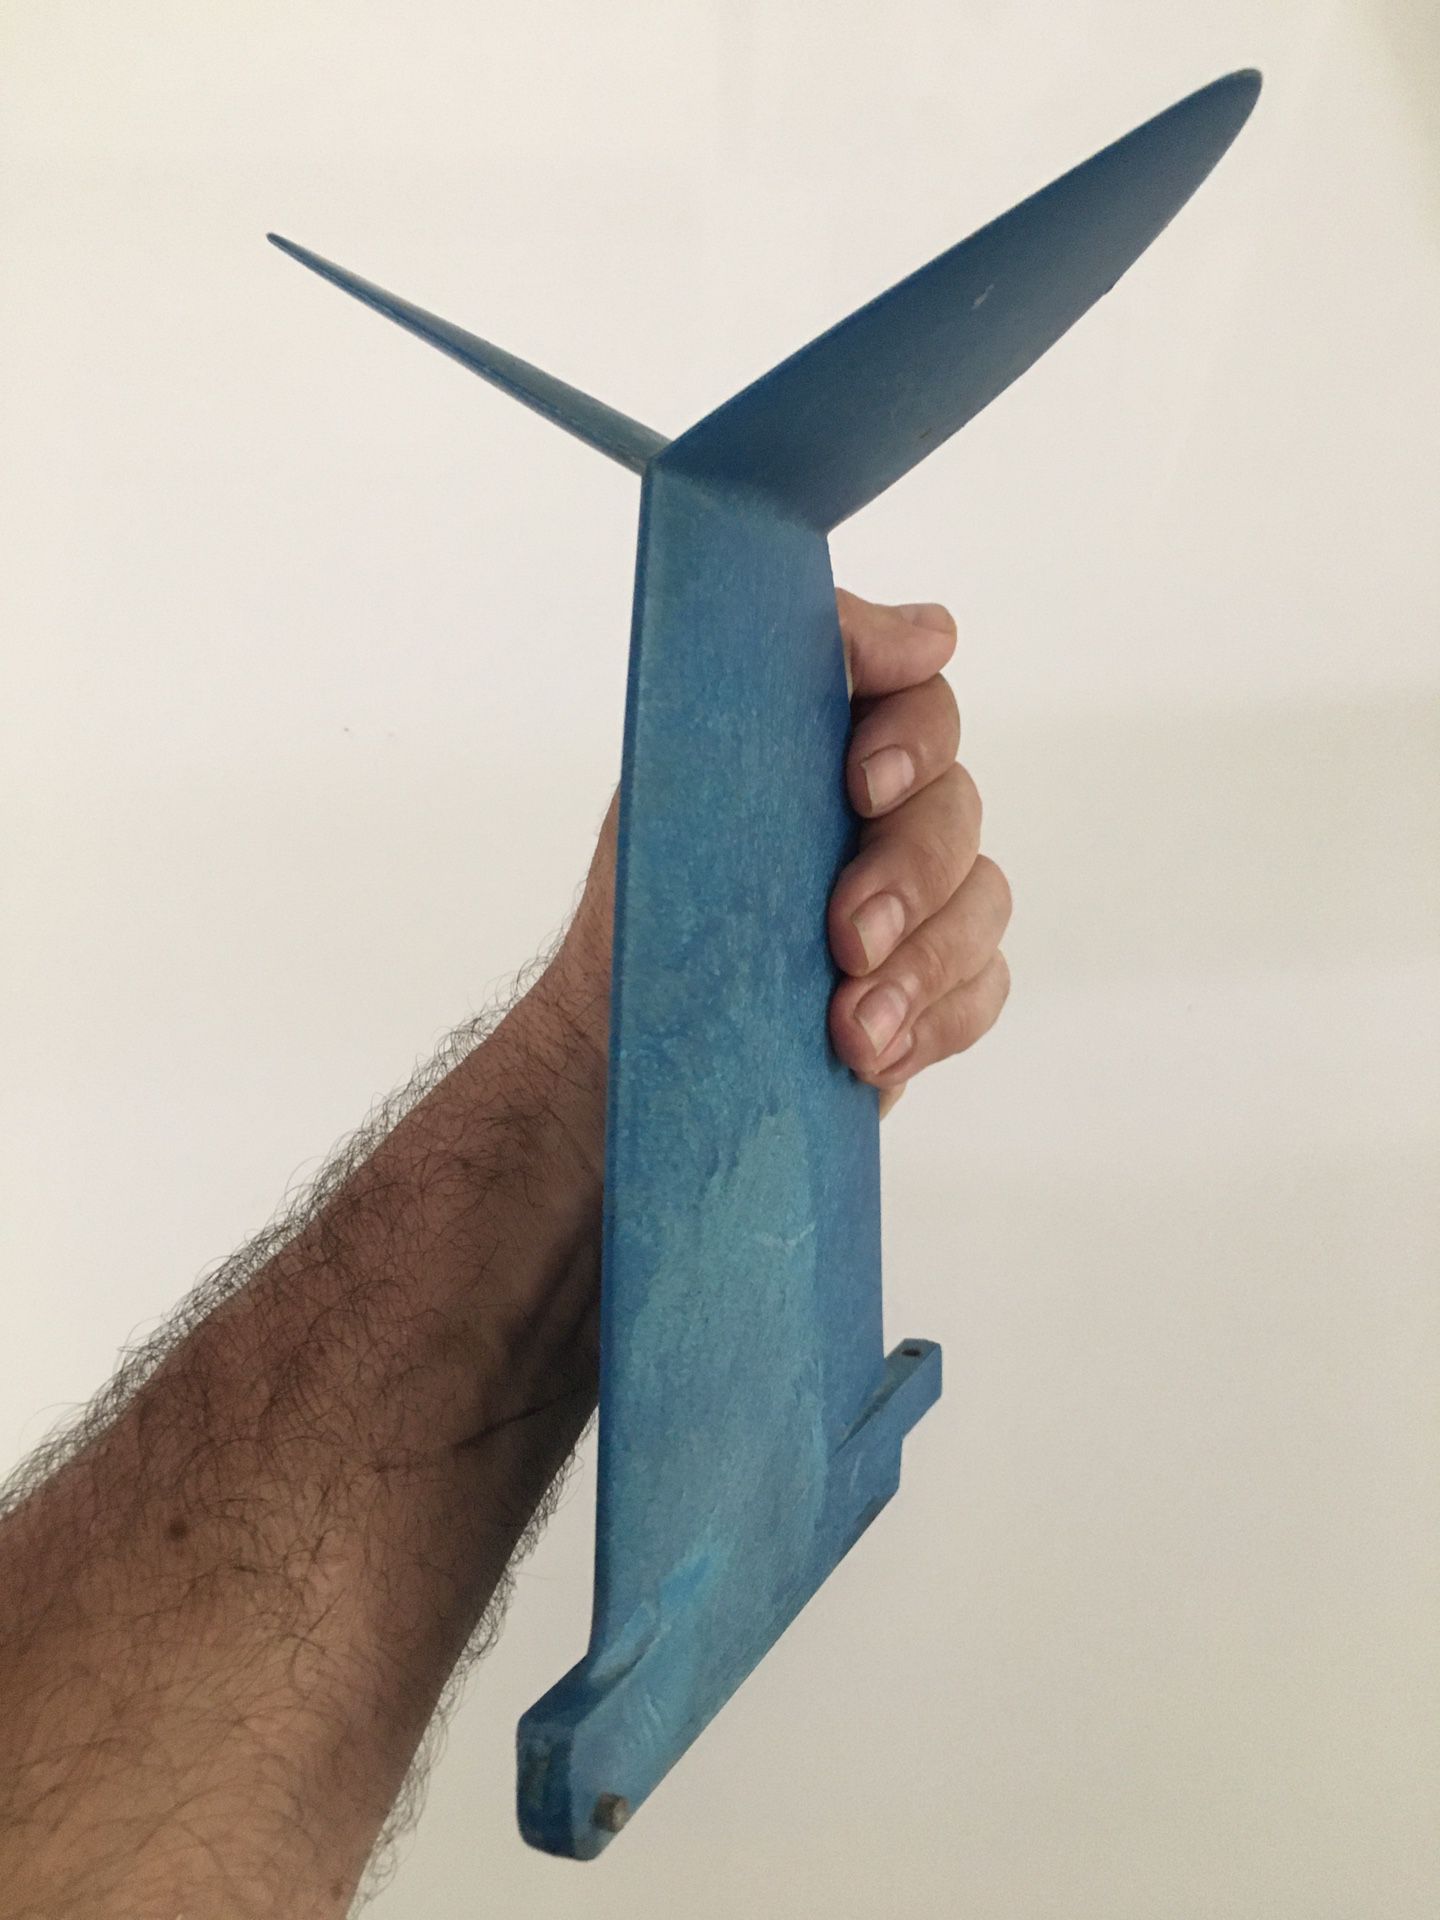 Cheyne Horan - Star Fin surfboard fin (winged keel)